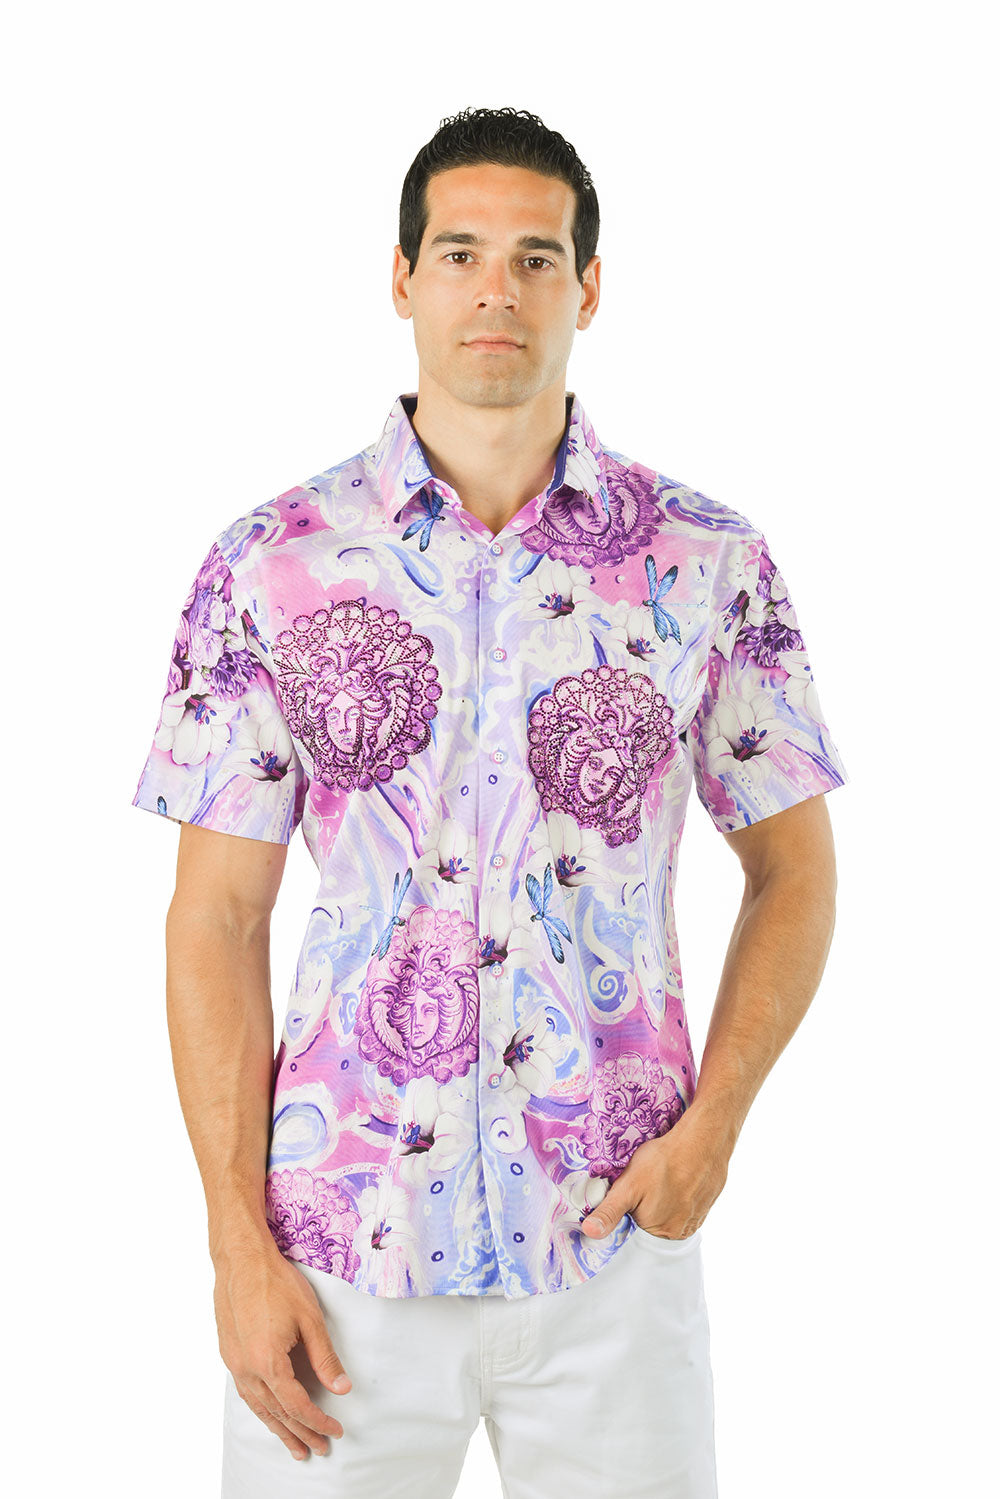 BARABAS Men's medusa paisley rhinestones short sleeve shirt SSR19